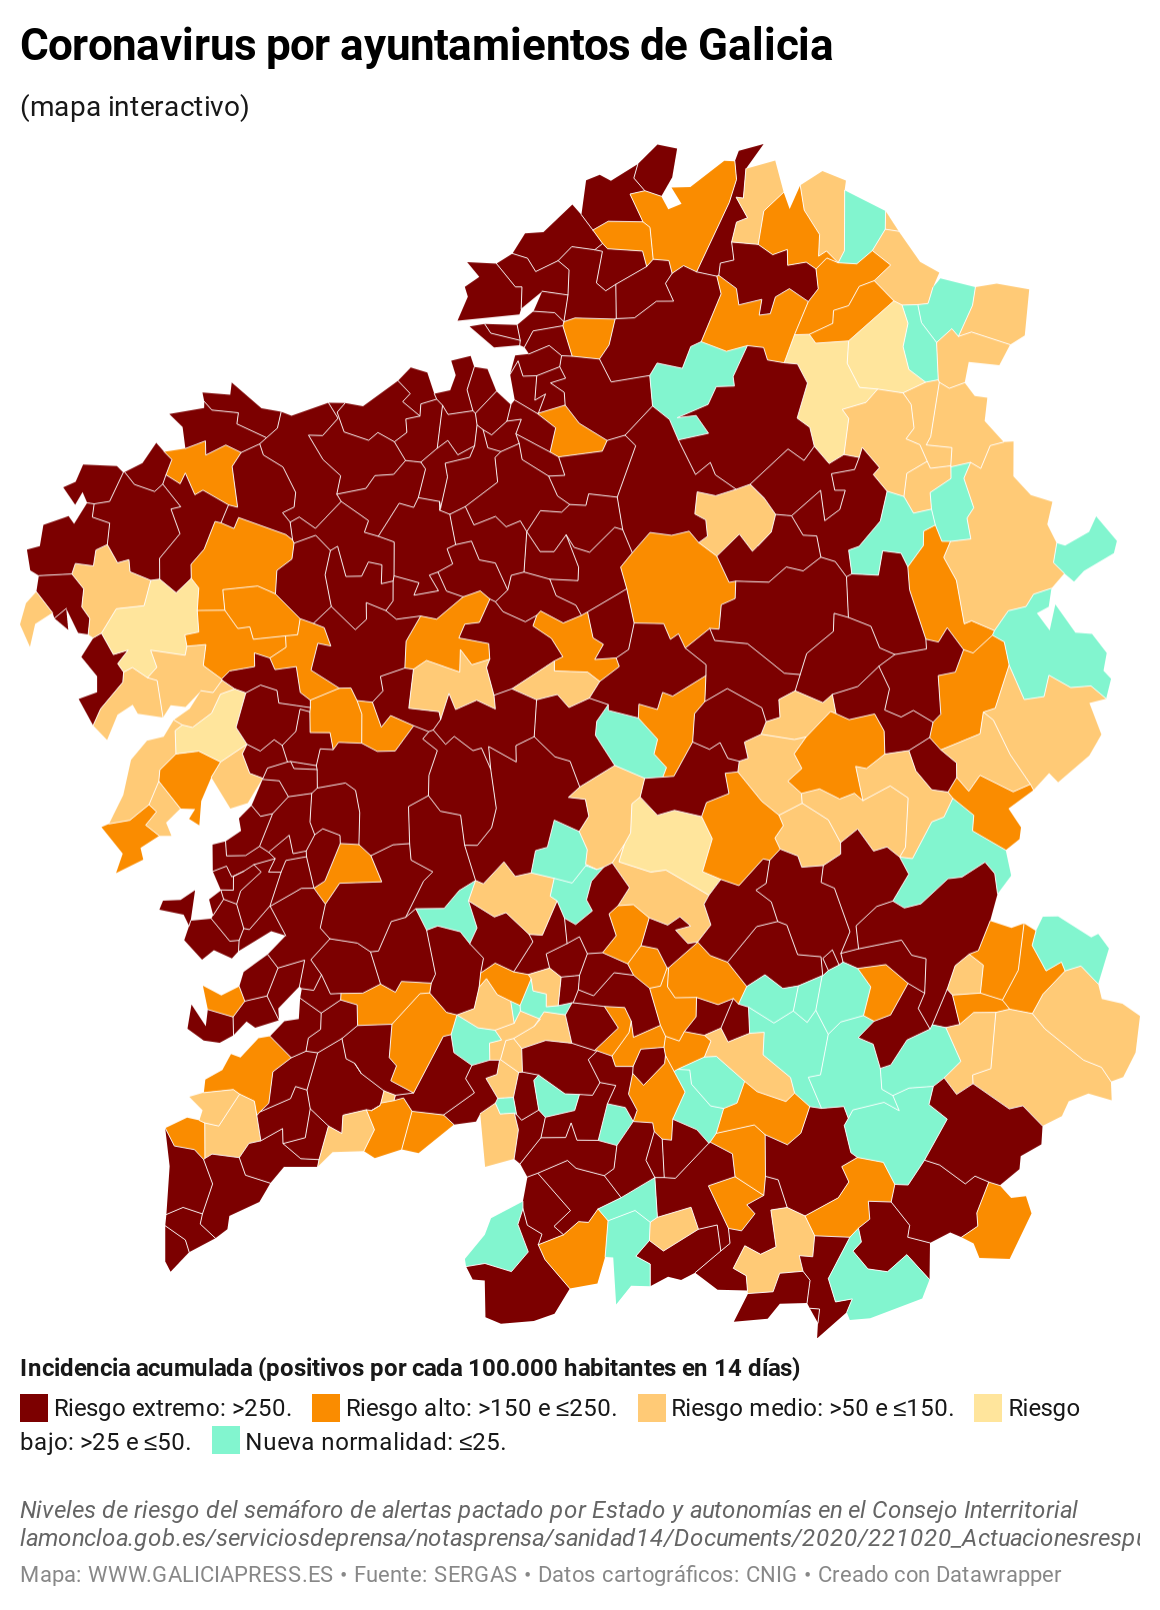 KV7EO coronavirus por concellos de galicia  (12)